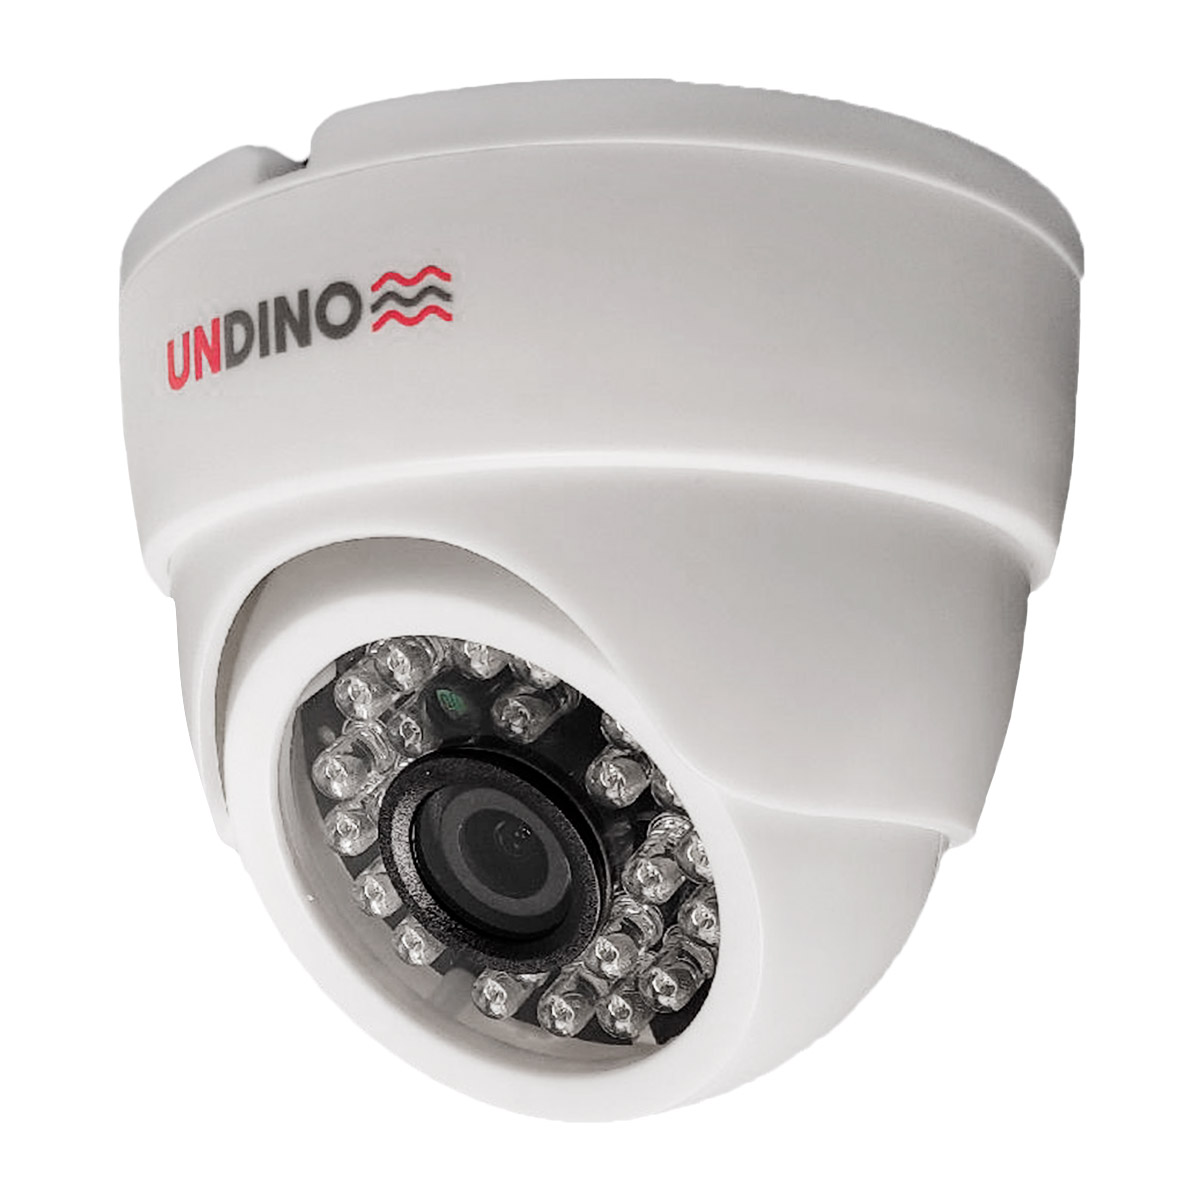 Купольная камера видеонаблюдения IP 2Мп Undino UD-ED02IP цифровая с POE питанием